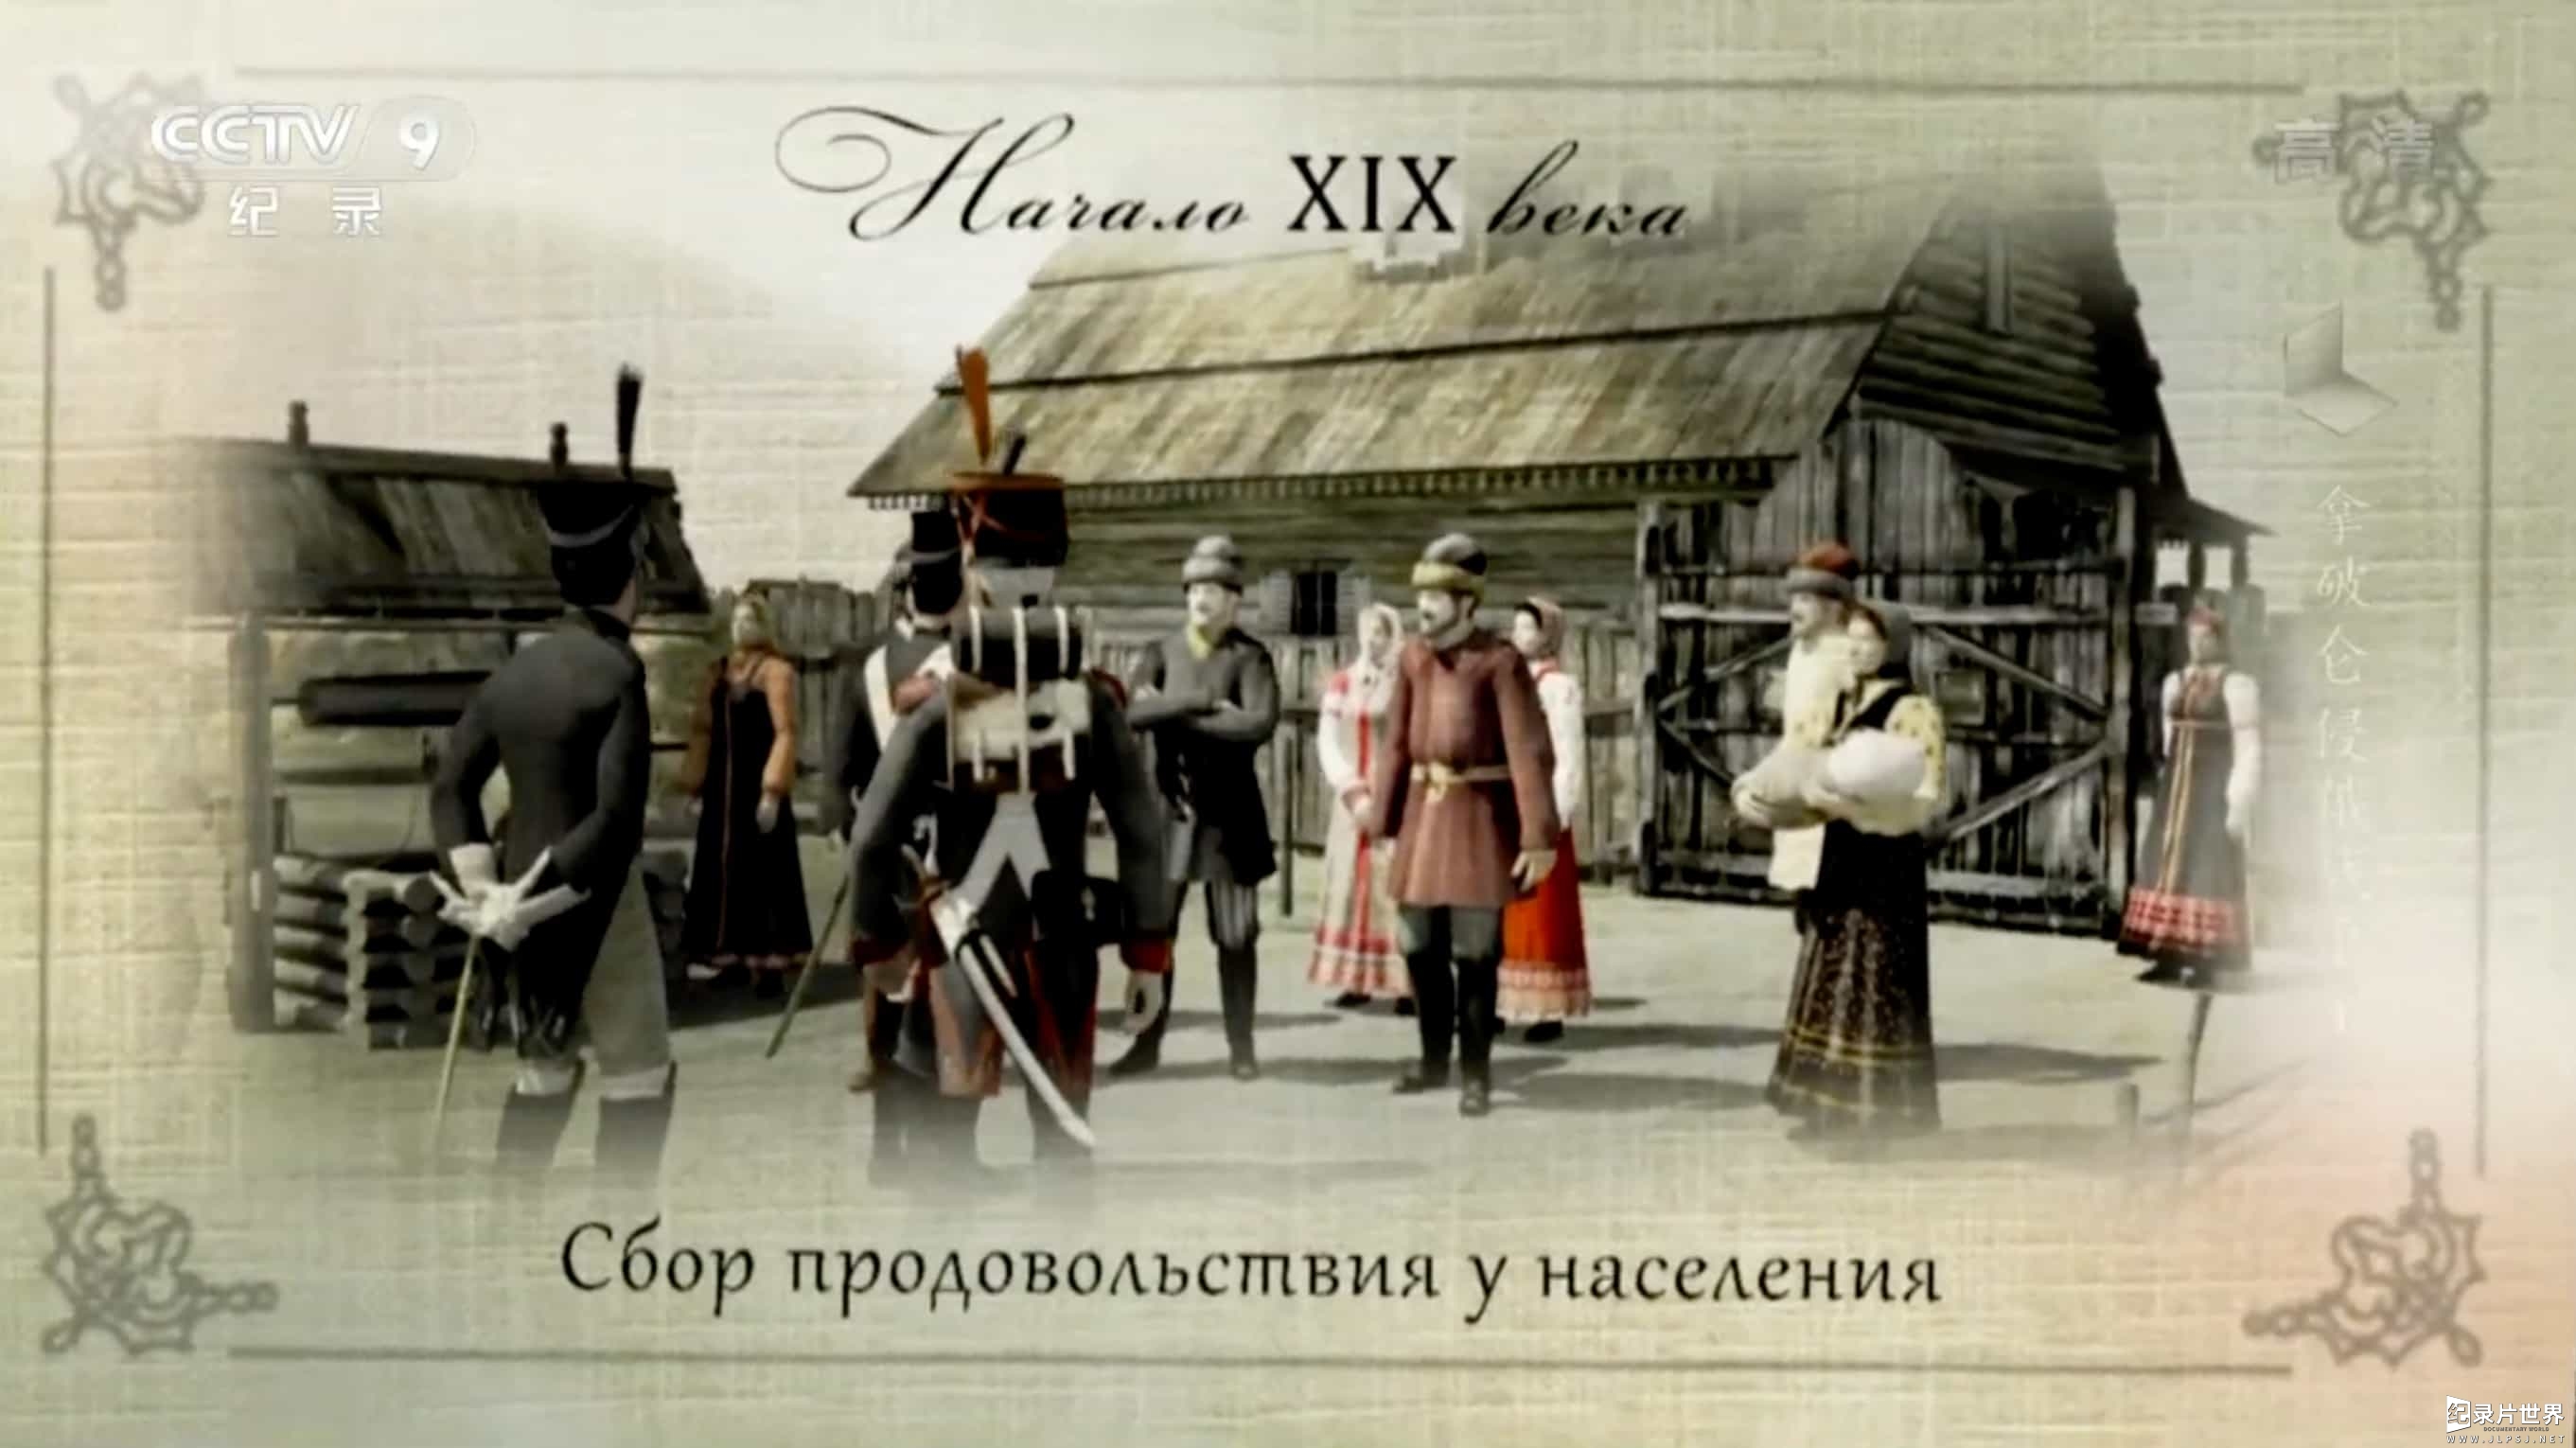 央视军事纪录片《1812 拿破仑侵俄战争》全4集